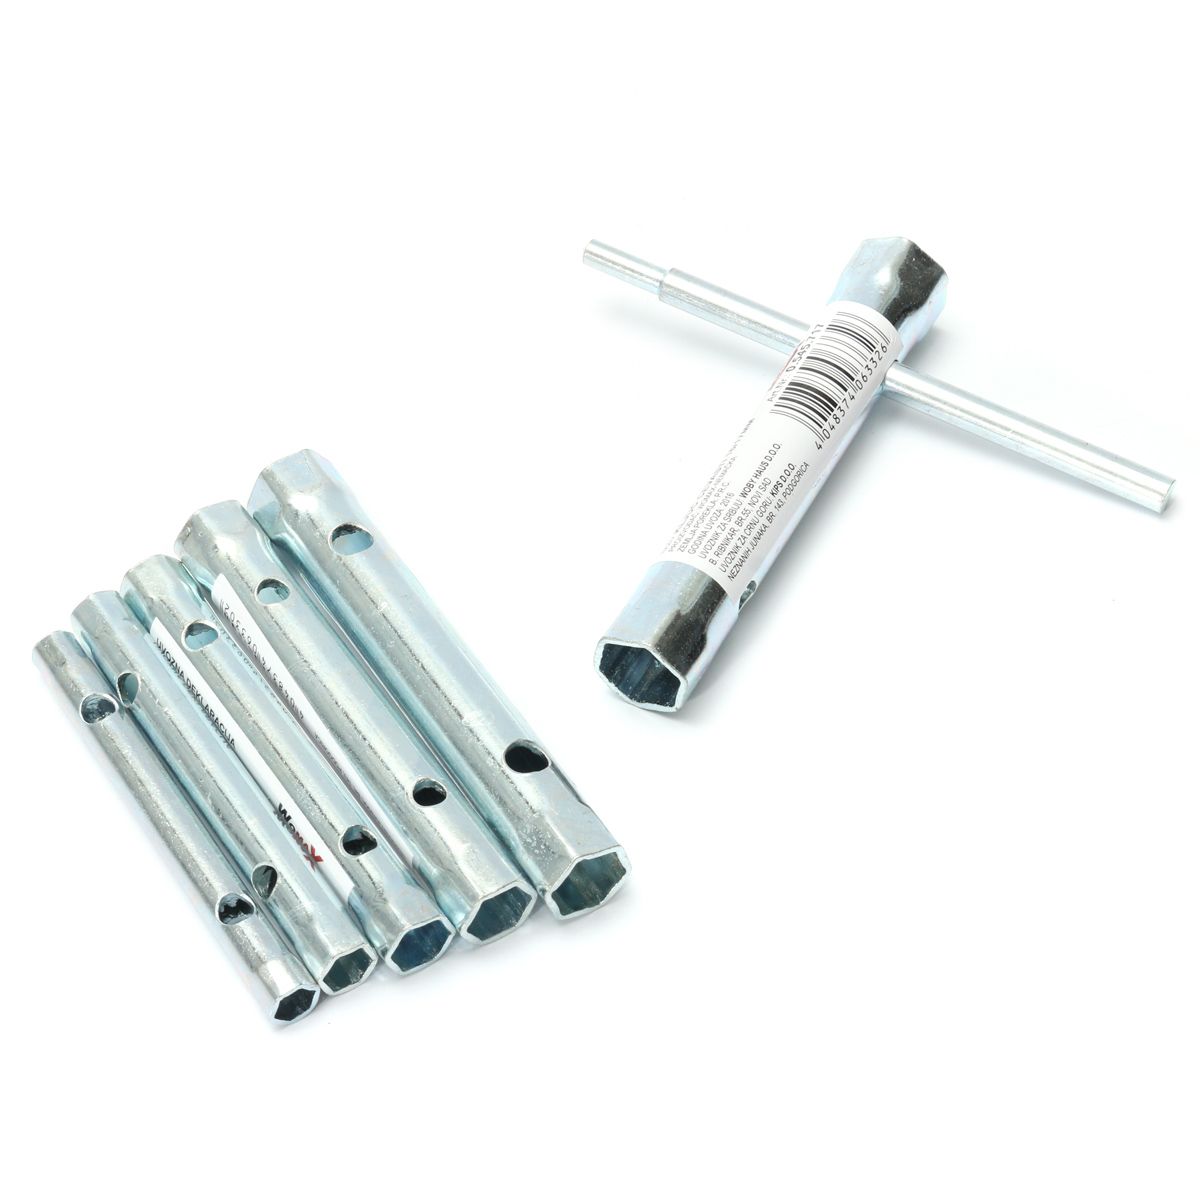 6Pcs-Tubular-Box-Spanner-Tube-Spanner-Wrench-Metric-Socket-Set-6mm-17mm-1104300